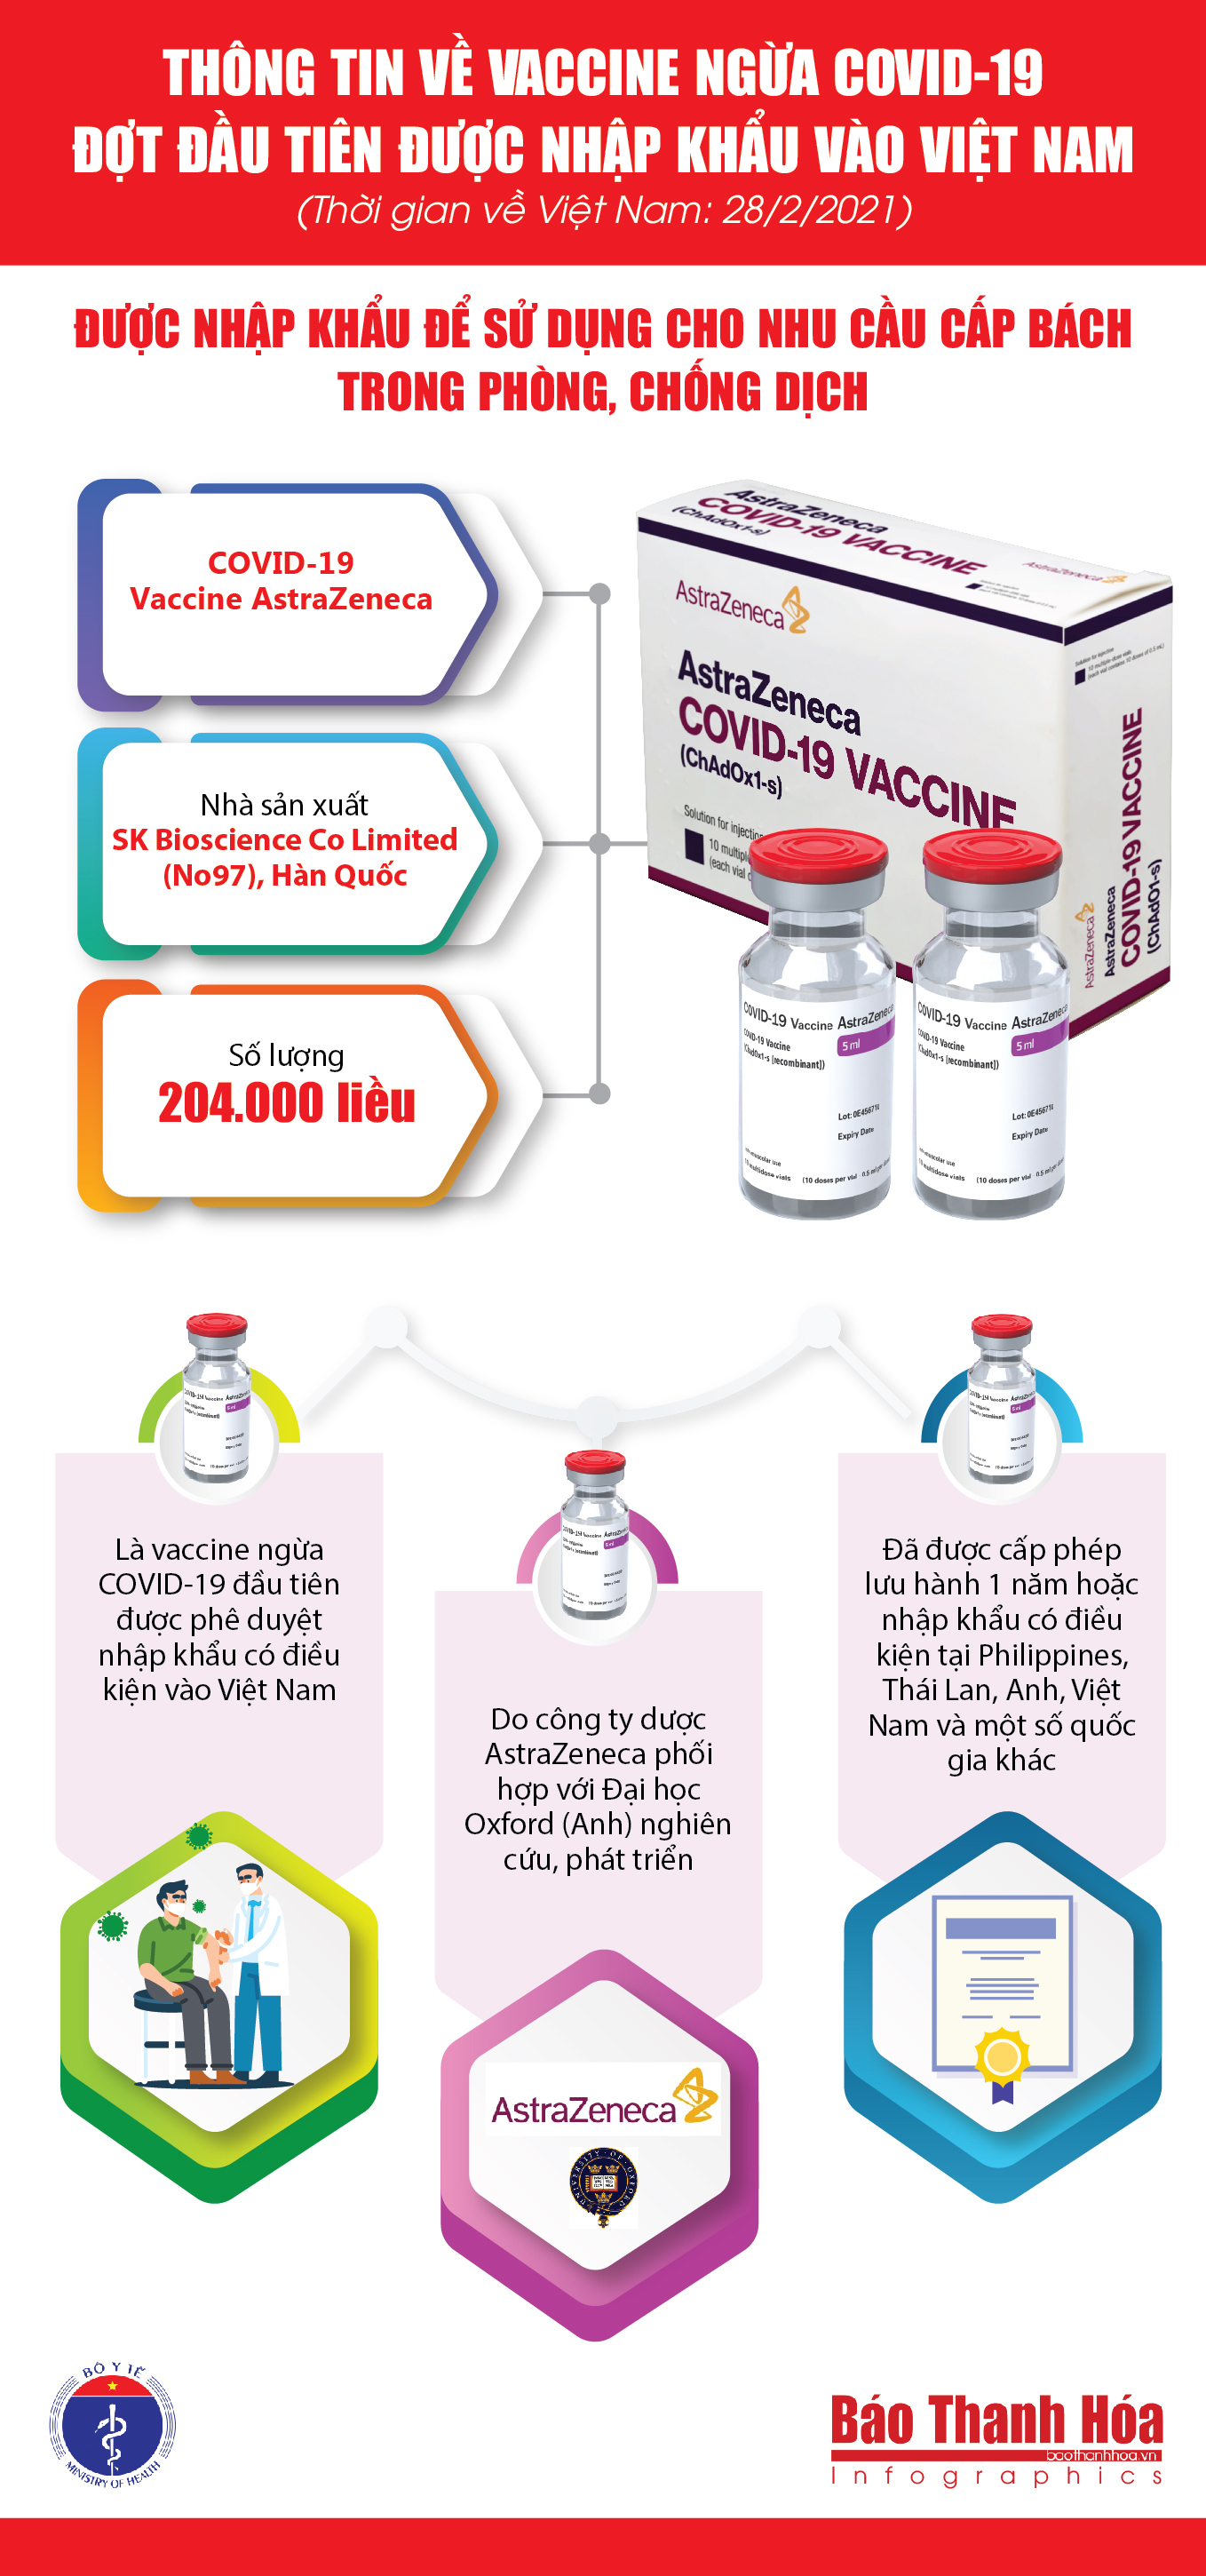 [Infographic] - Thông tin về vaccine ngừa COVID-19 đợt đầu được nhập khẩu vào Việt Nam